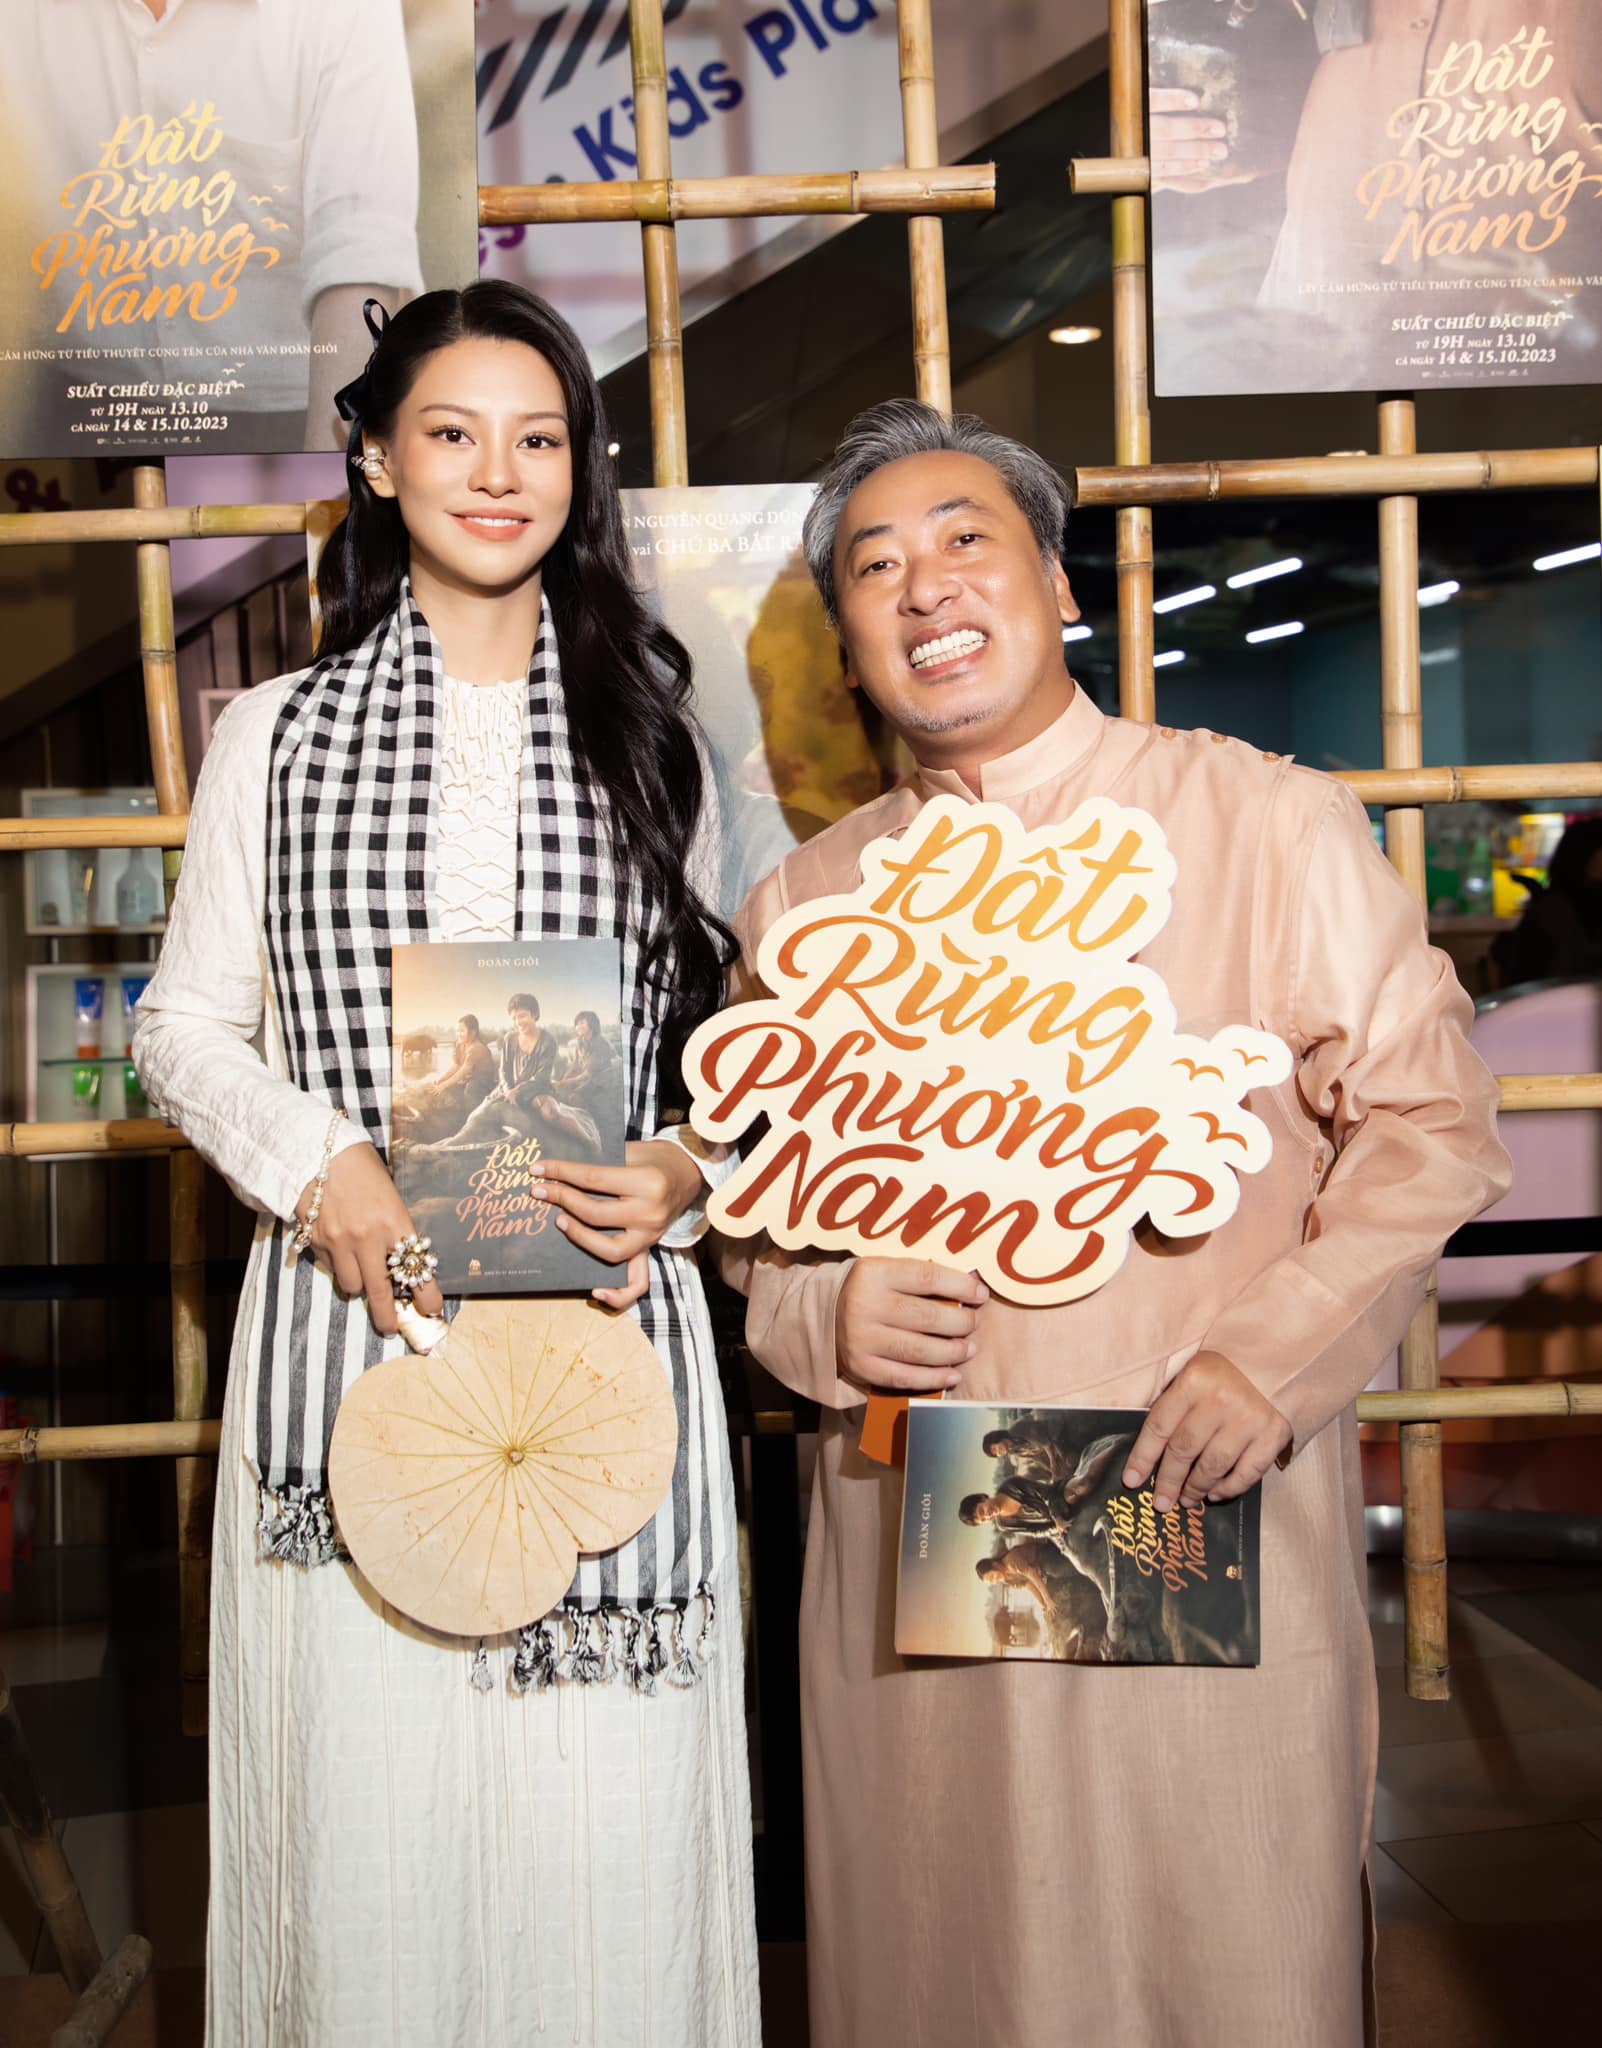 Bùi Lan Hương bên cạnh Nguyễn Quang Dũng trong họp báo của bộ phim&nbsp;Đất Rừng Phương Nam.